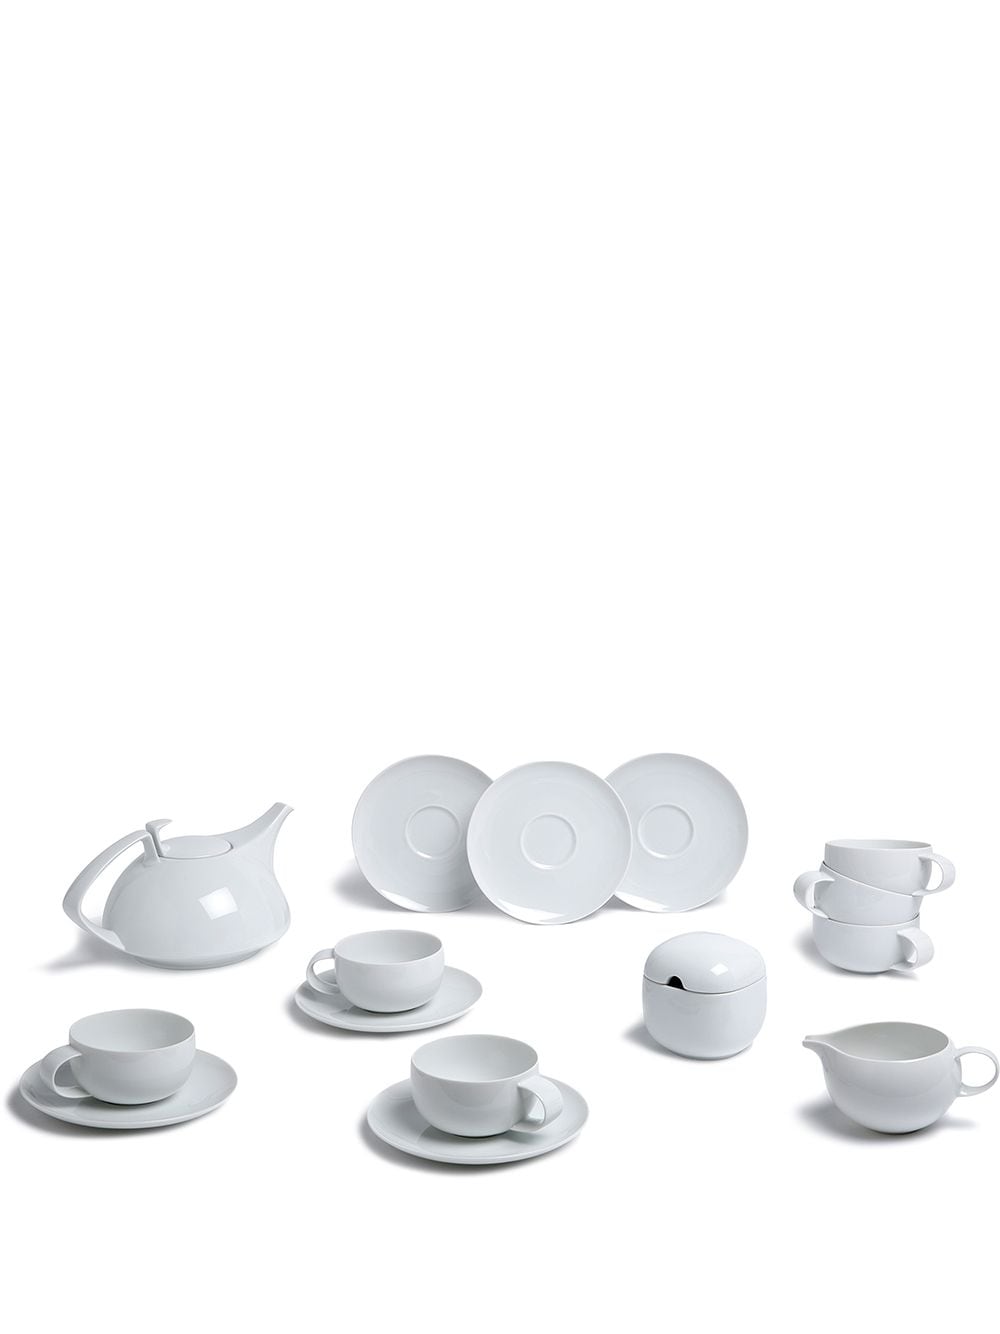 фото Rosenthal чайный набор suomi из 15 предметов